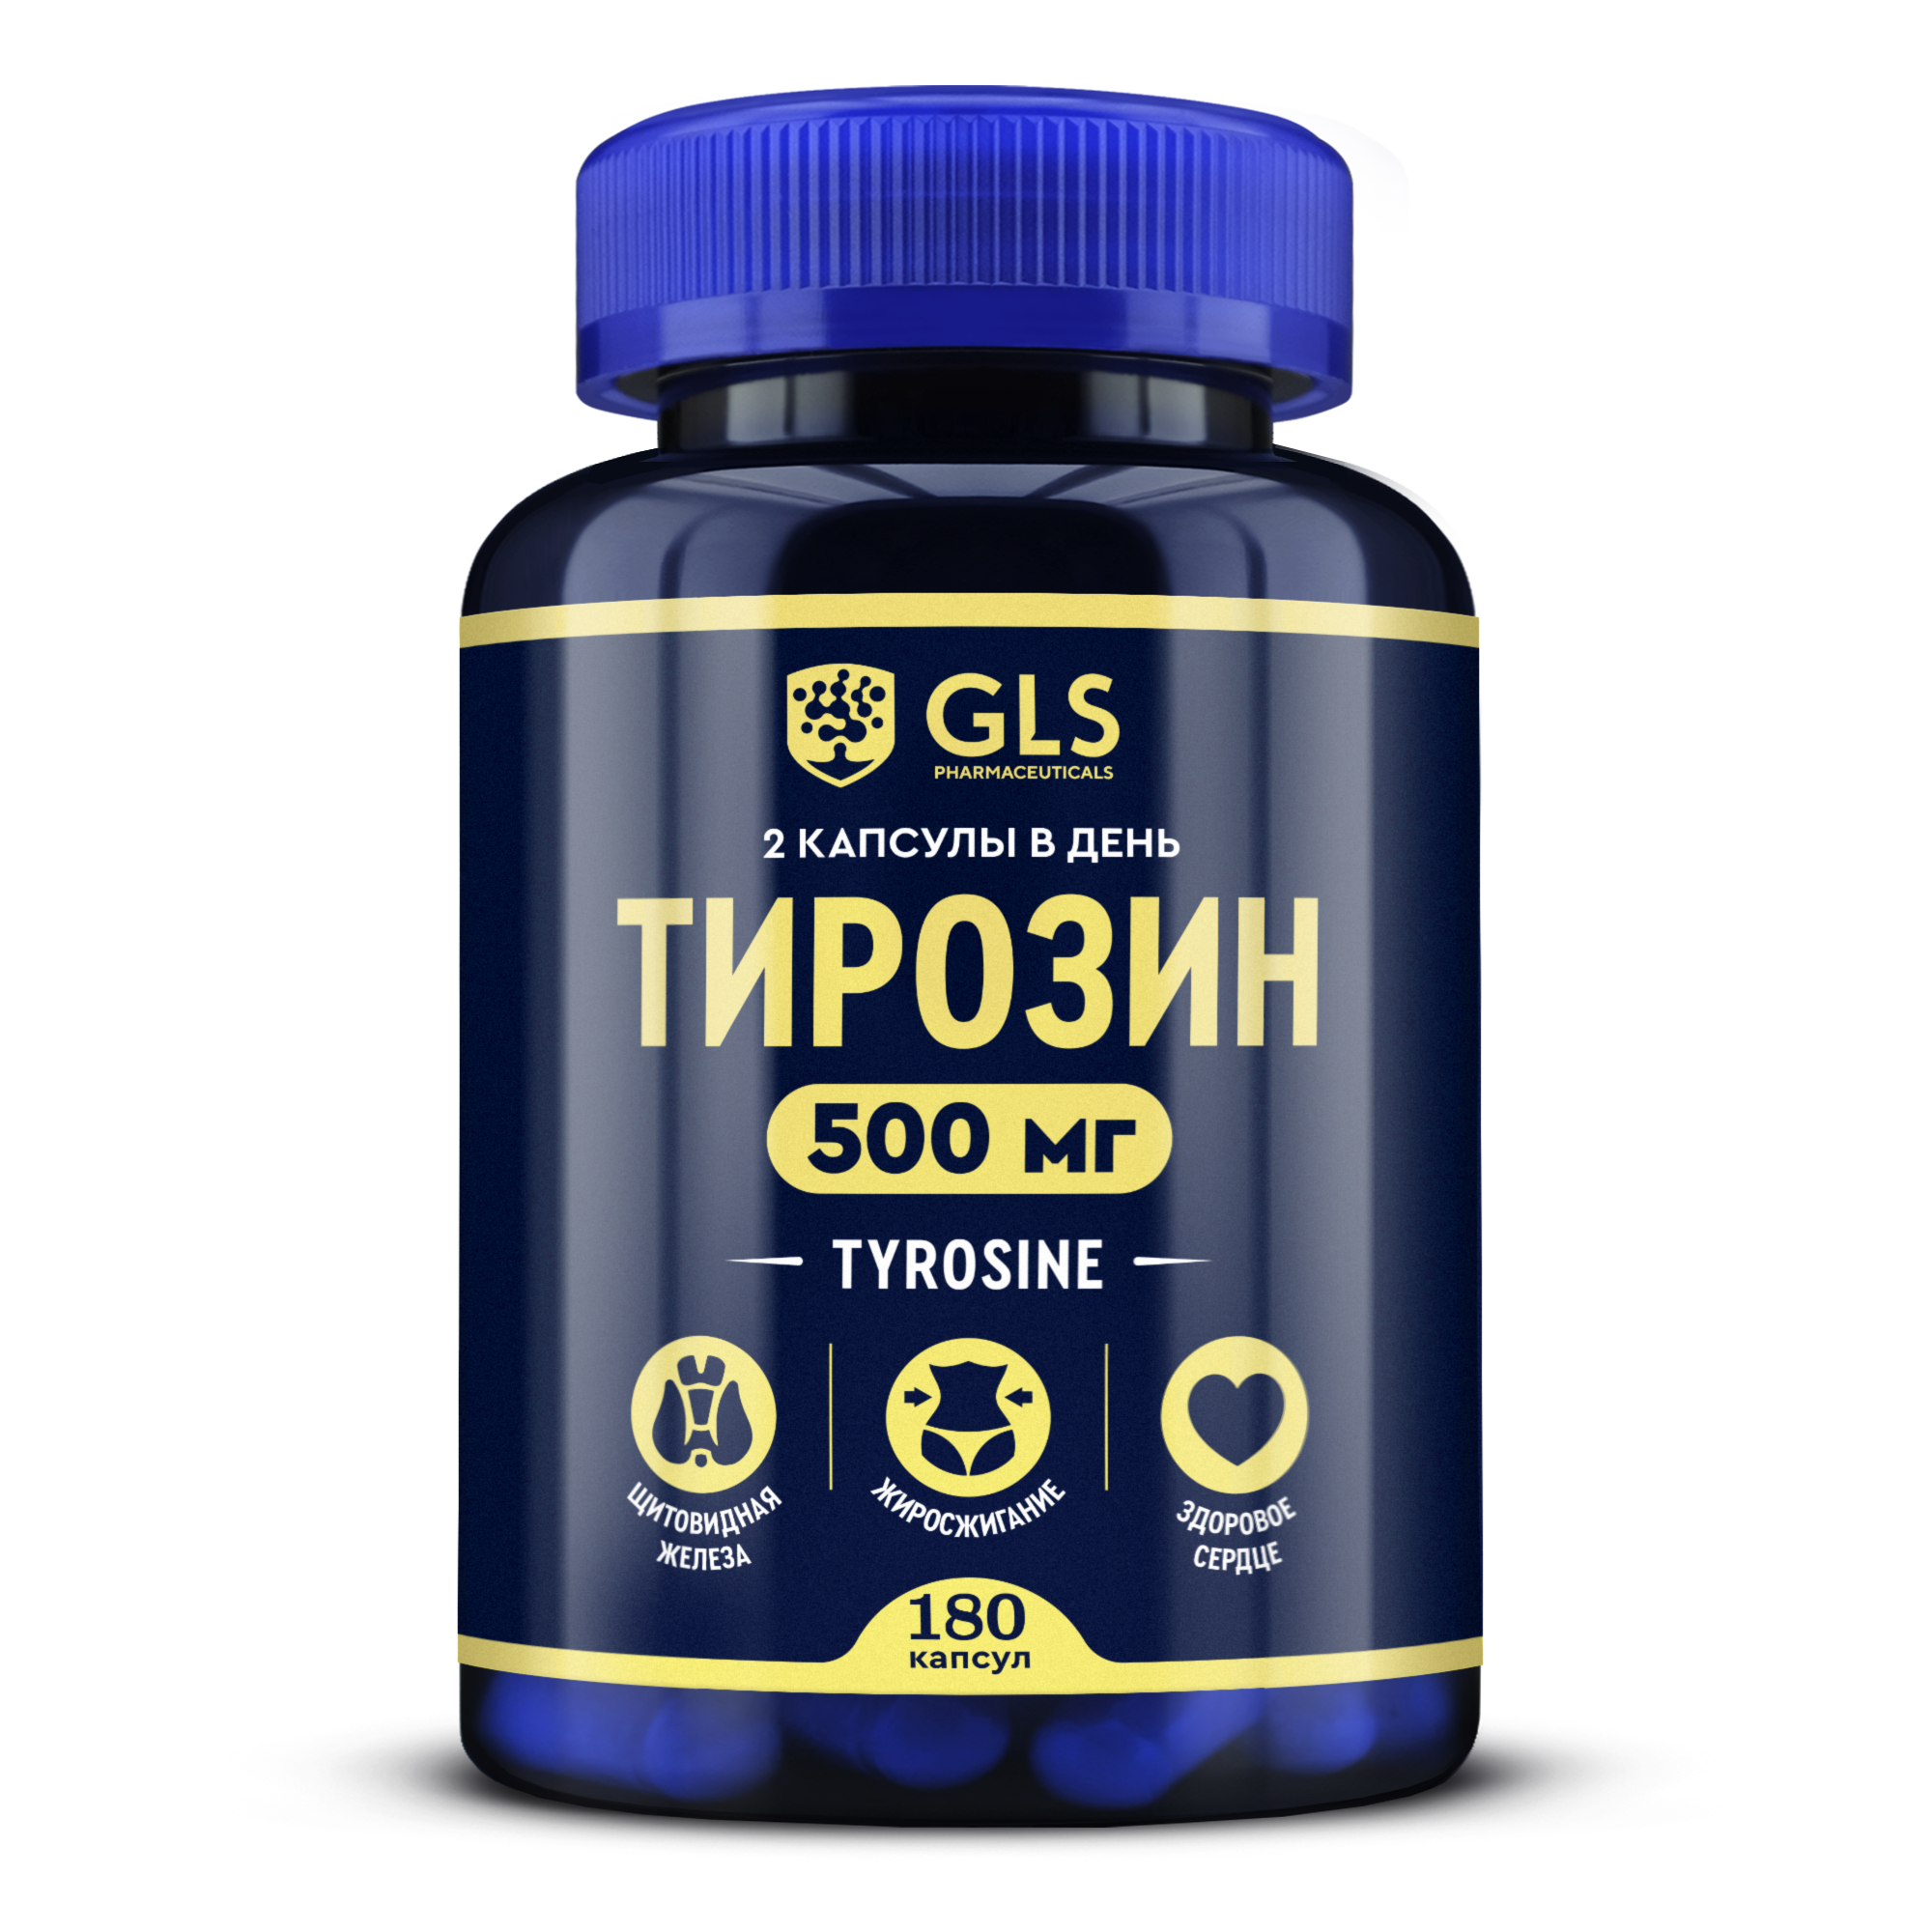 Тирозин, витамины для снижения веса и улучшения самочувствия, (л тирозин), 180 капсул